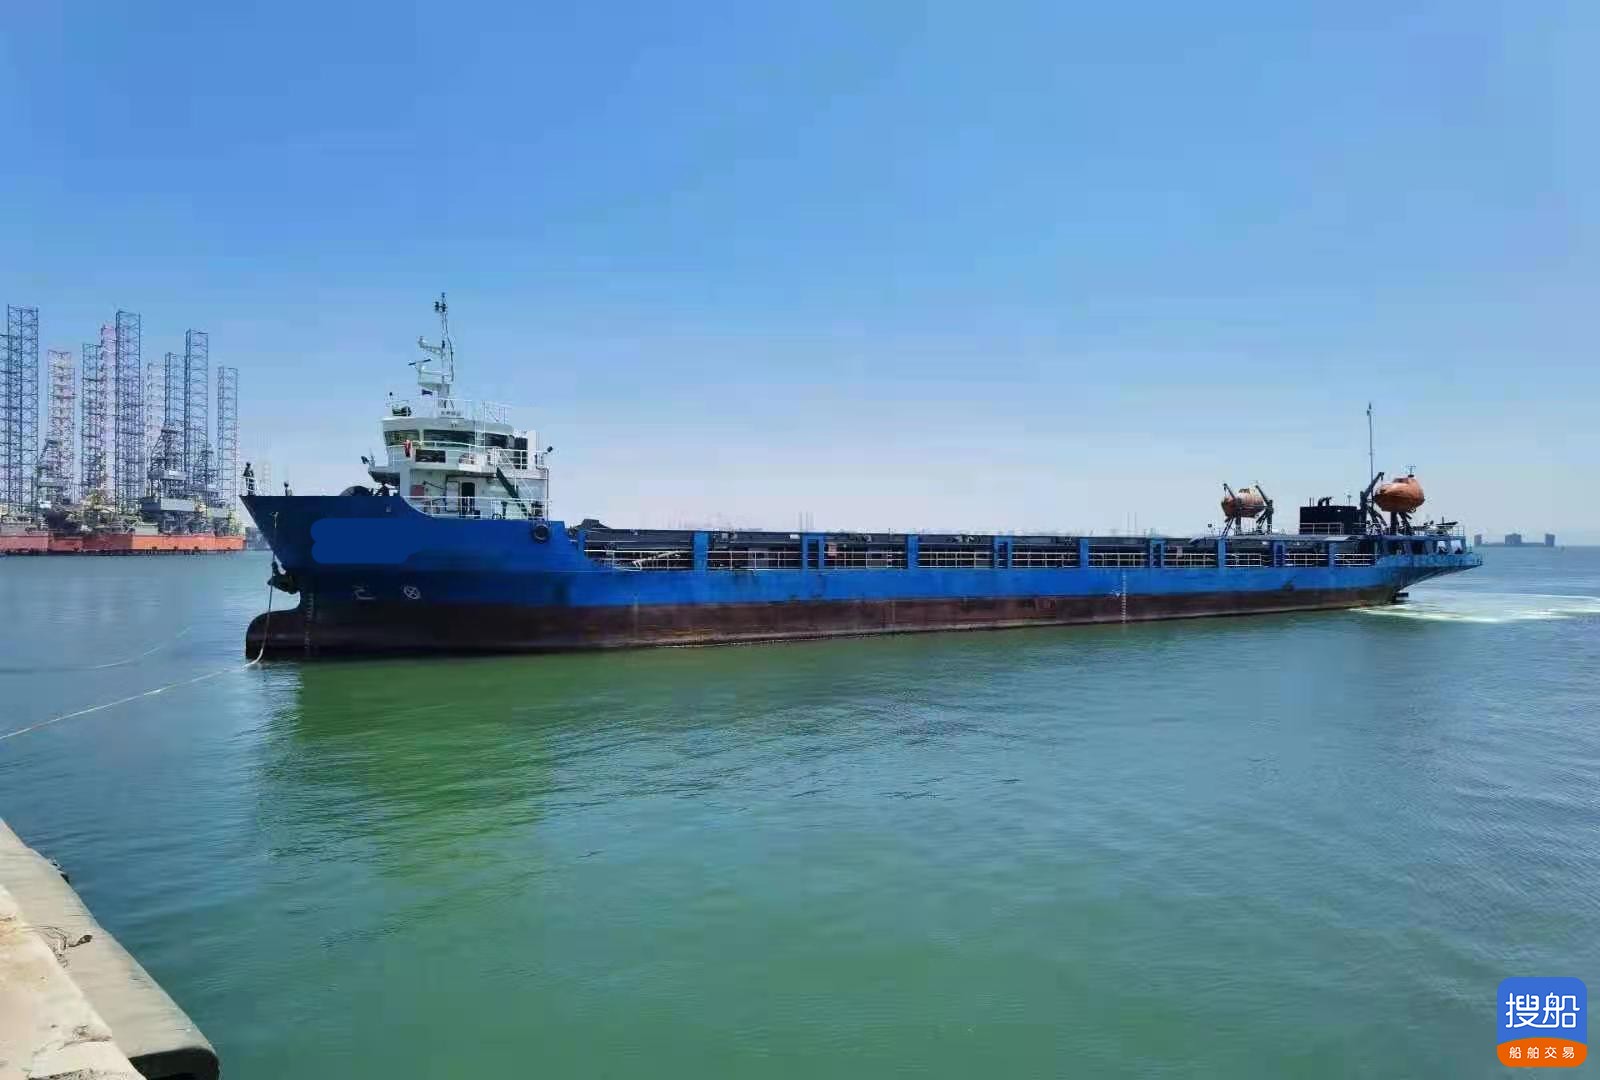 出售2018年造5008吨近海前驾驶多用途船  集散两用 广东 深...-2.jpg